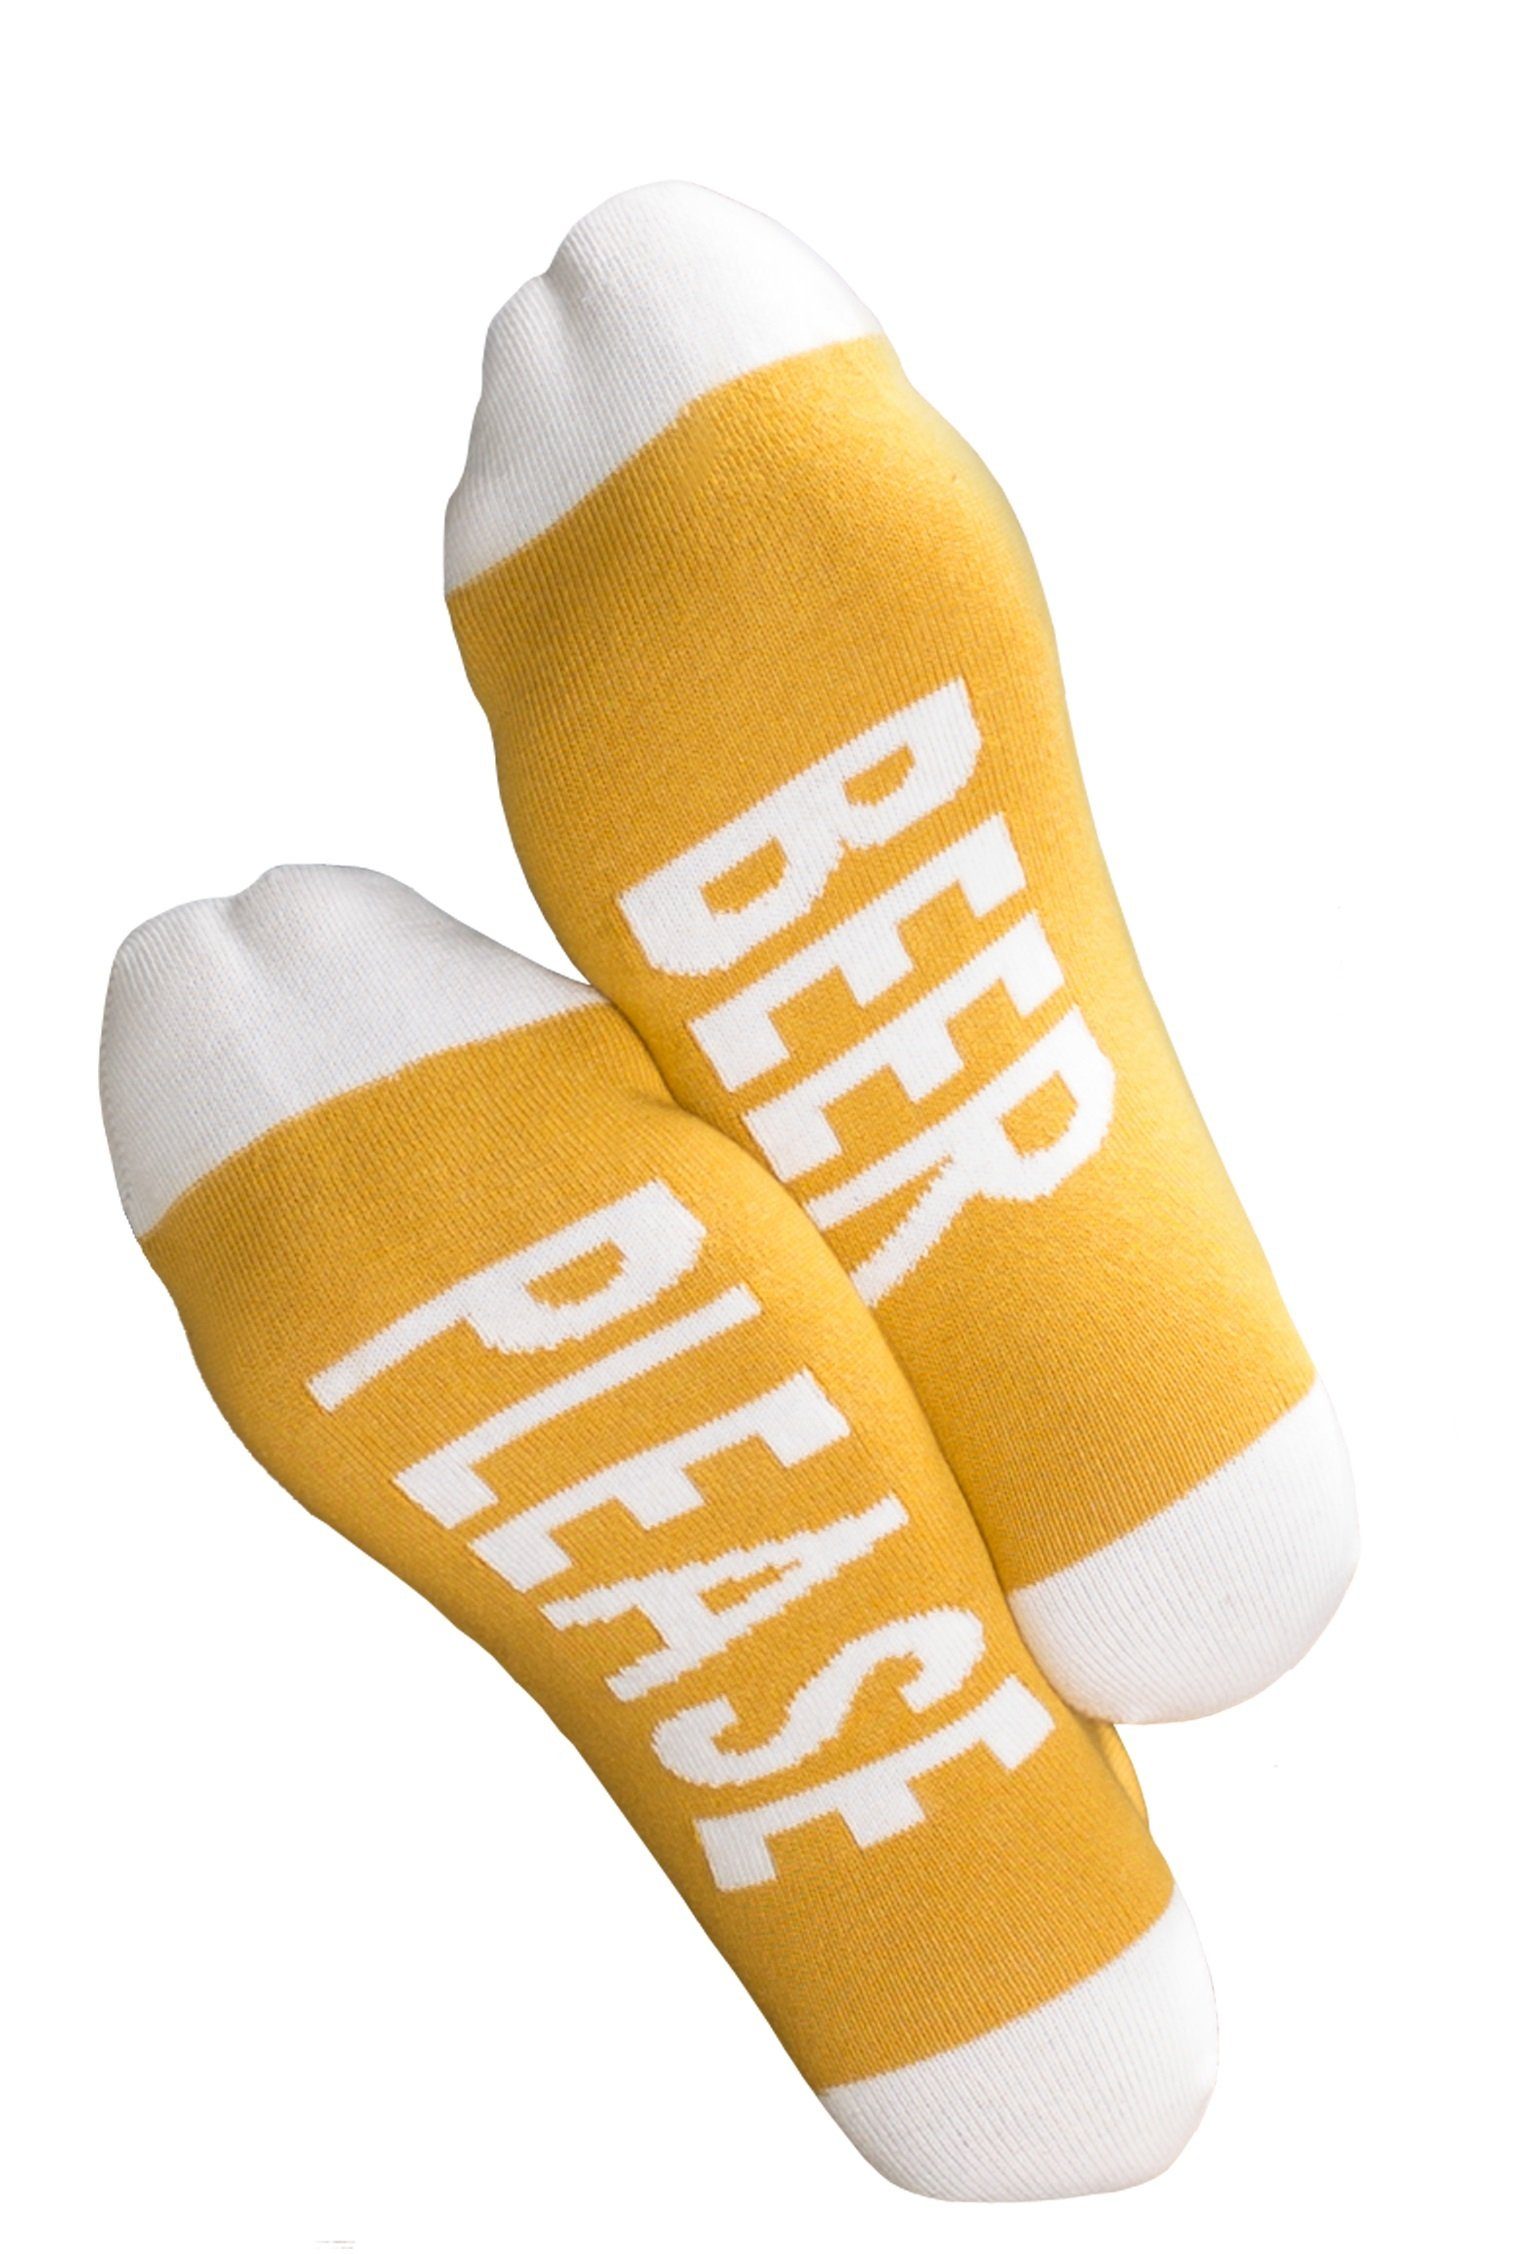 Clark Crown® Socken mit lustigen Beer Sprüchen Please